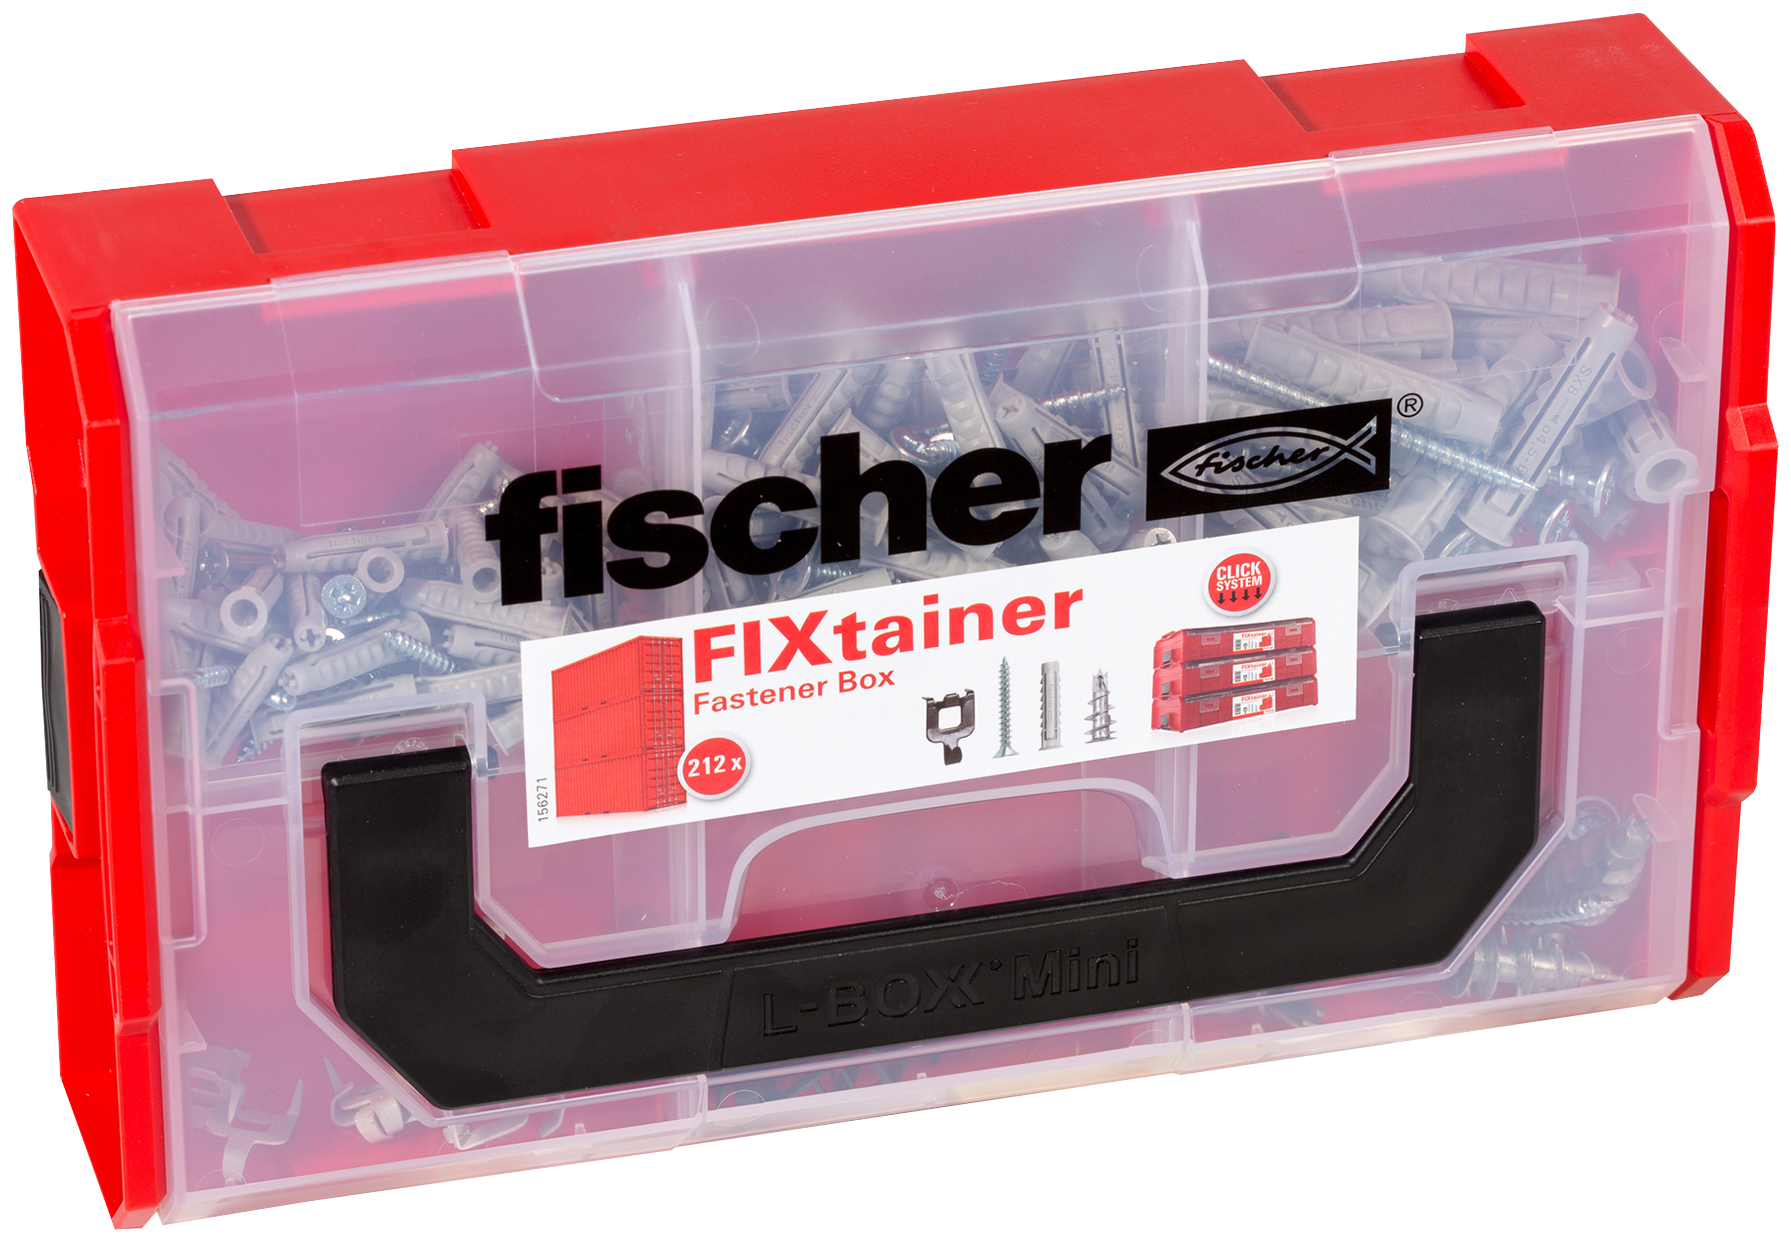 fischer FIXtainer SX GKM con viti e ganci Valigetta tasselli (204 Pz.) Pratiche soluzioni di fissaggio per le pi comuni applicazioni nel fischer FixTainer impilabile e di alta qualit.